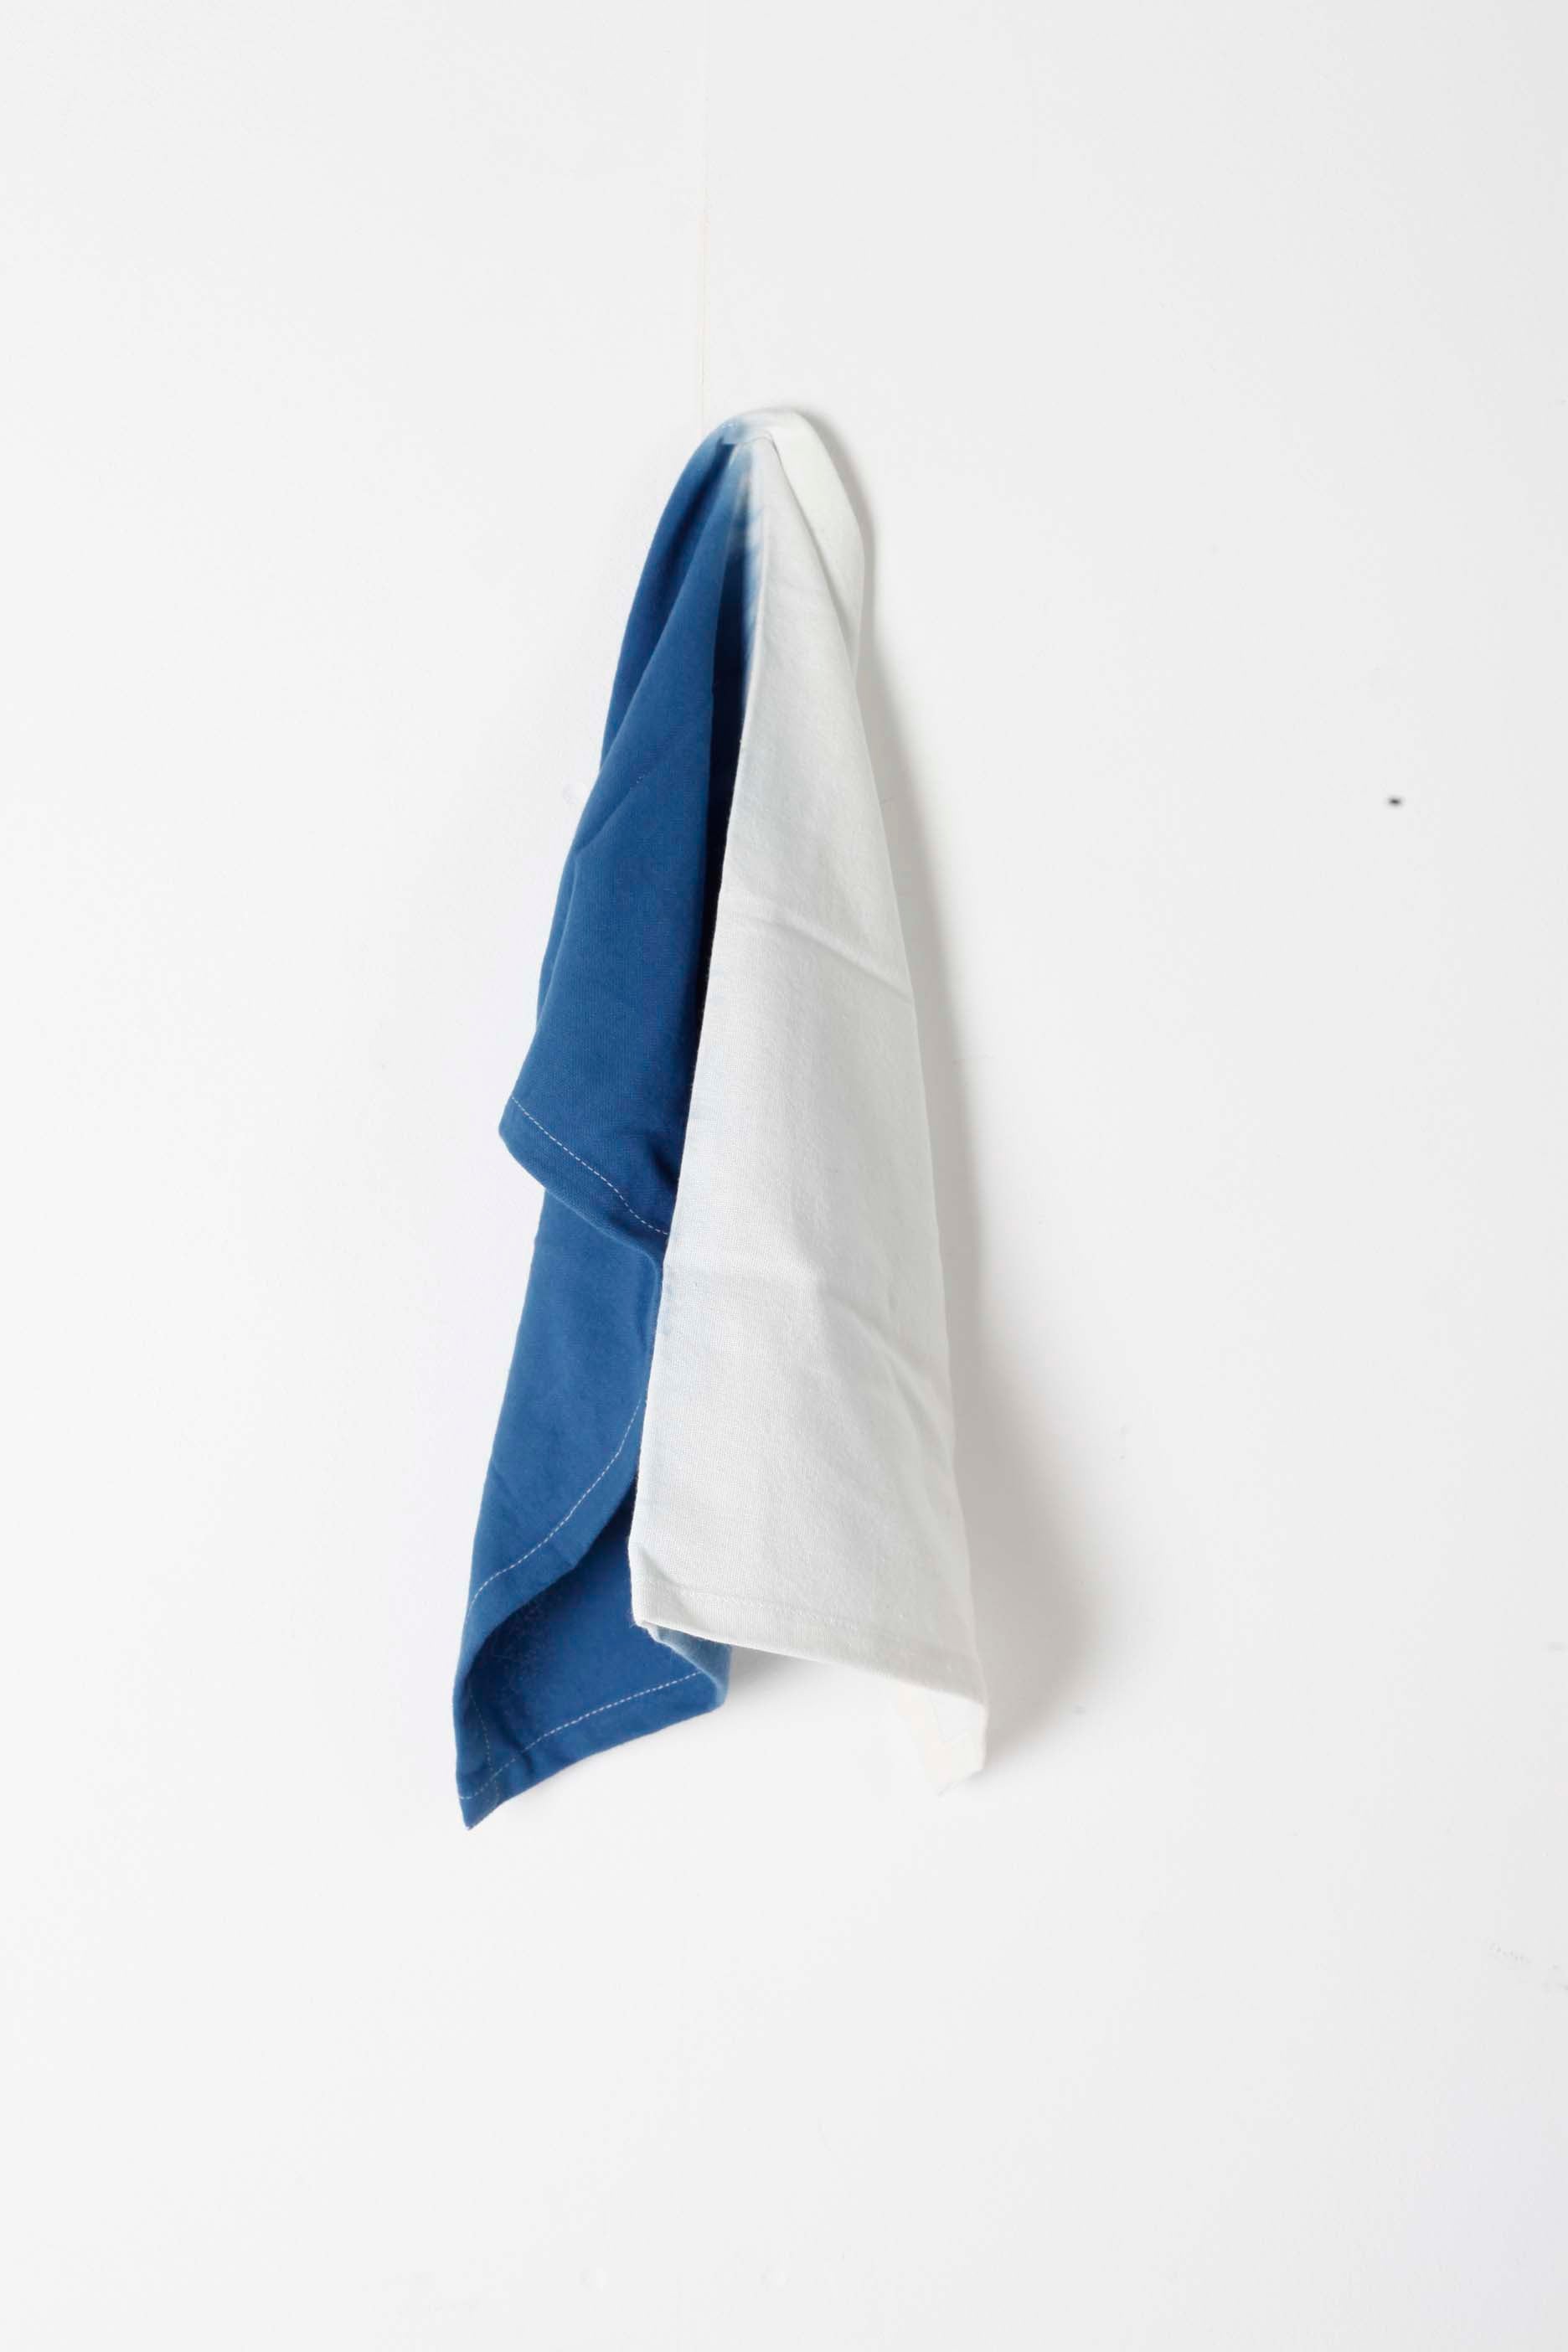 Blue & White Tie Dye Napkins